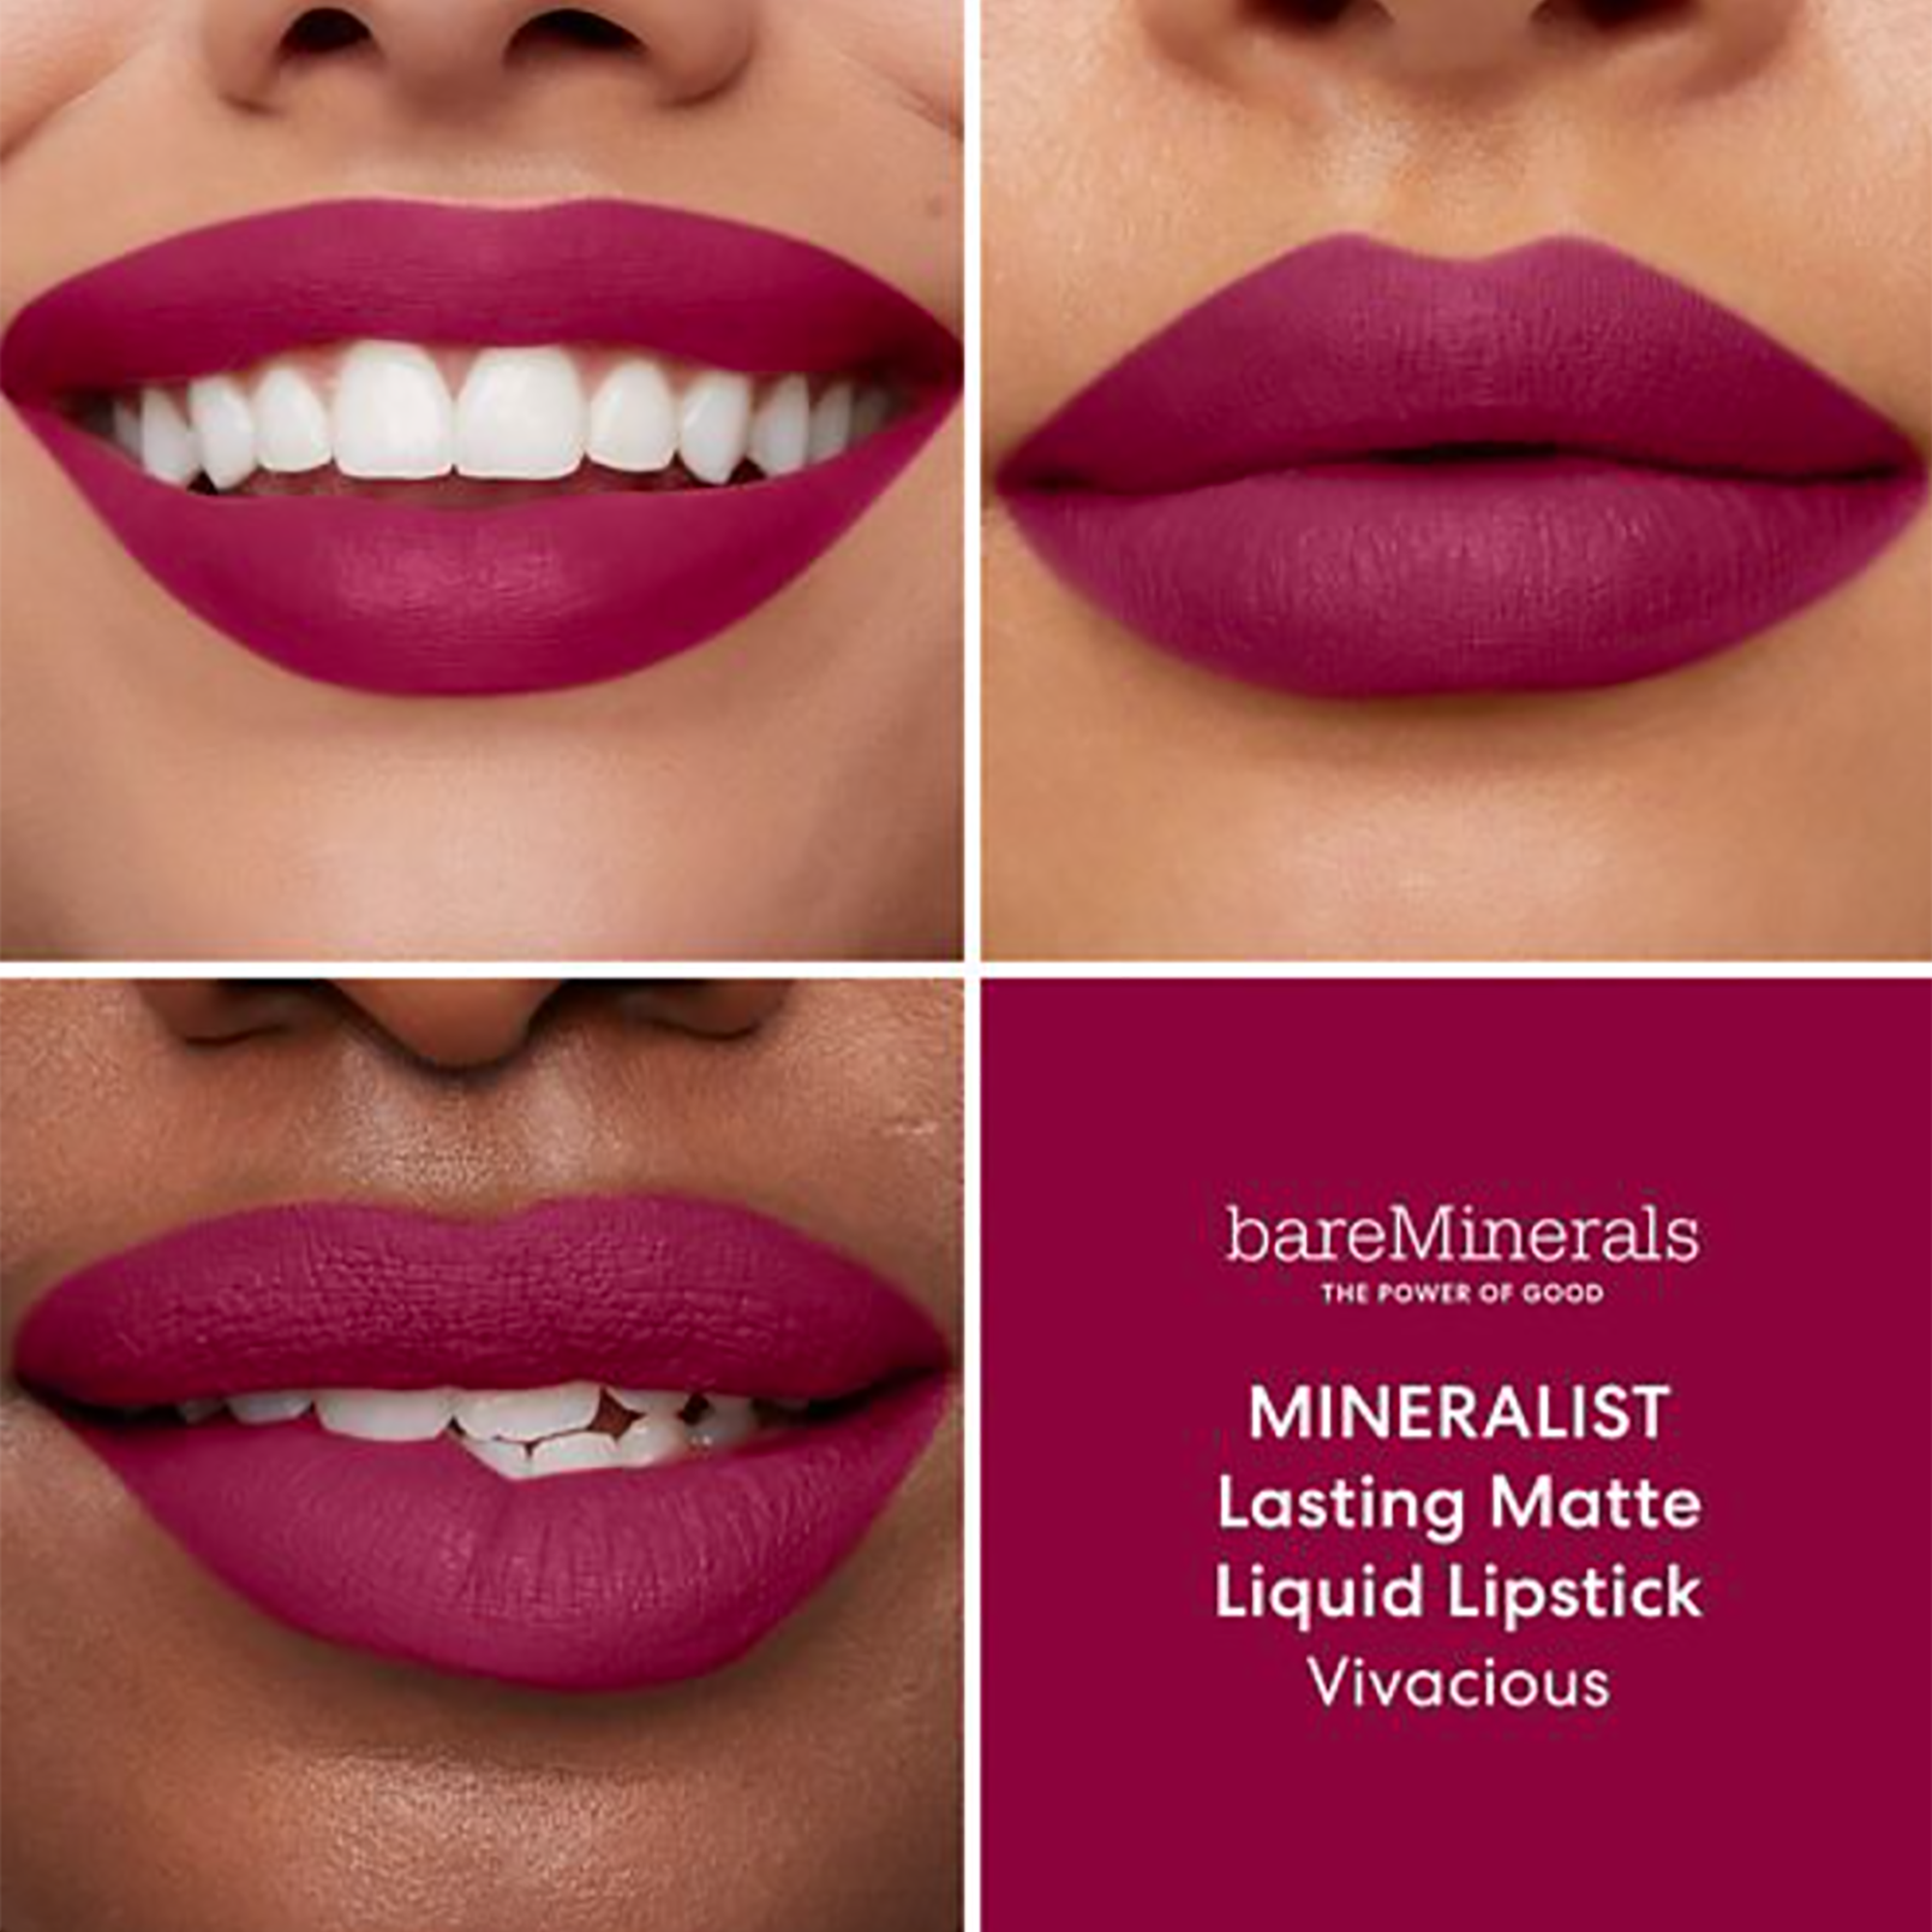 Bare Minerals Mineralist Lasting Matte Liquid Lipstick / VIVACIOUS